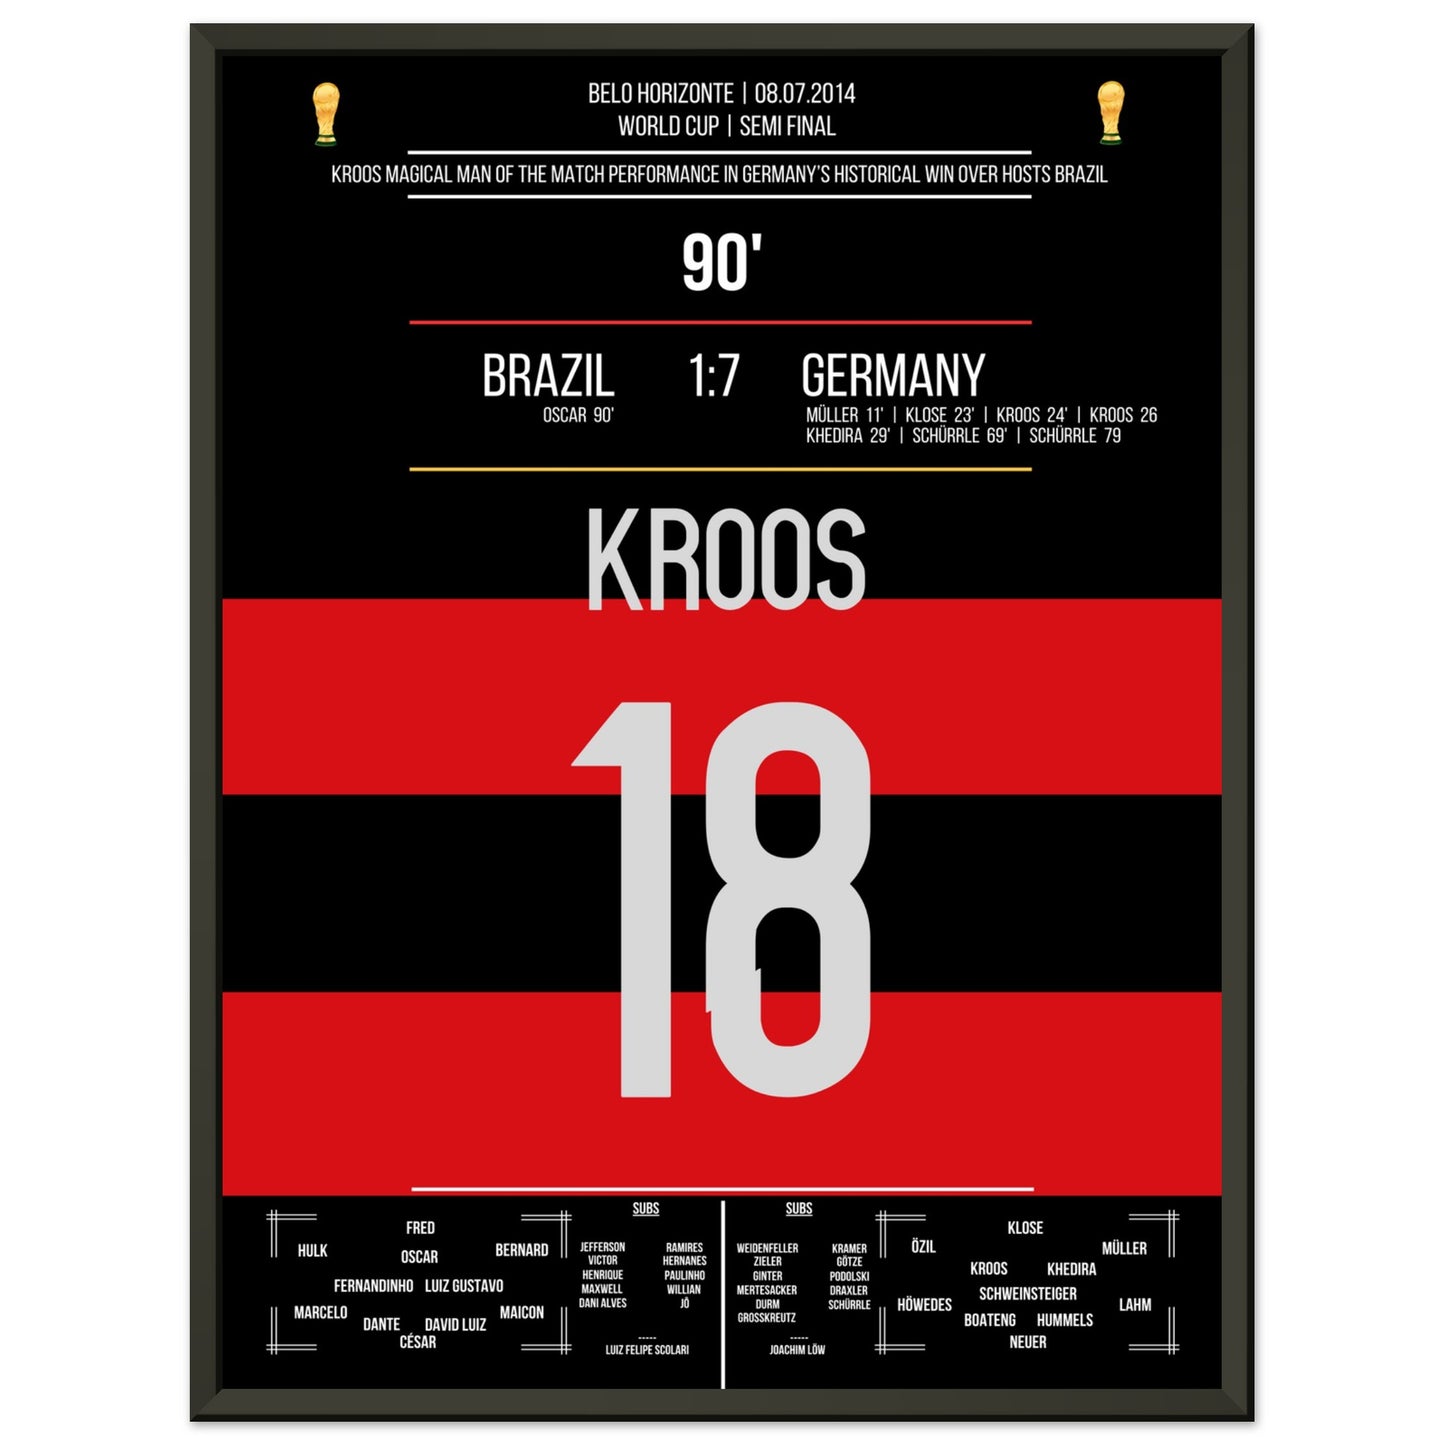 Kroos' großer Auftritt im WM Halbfinale gegen Brasilien 2014